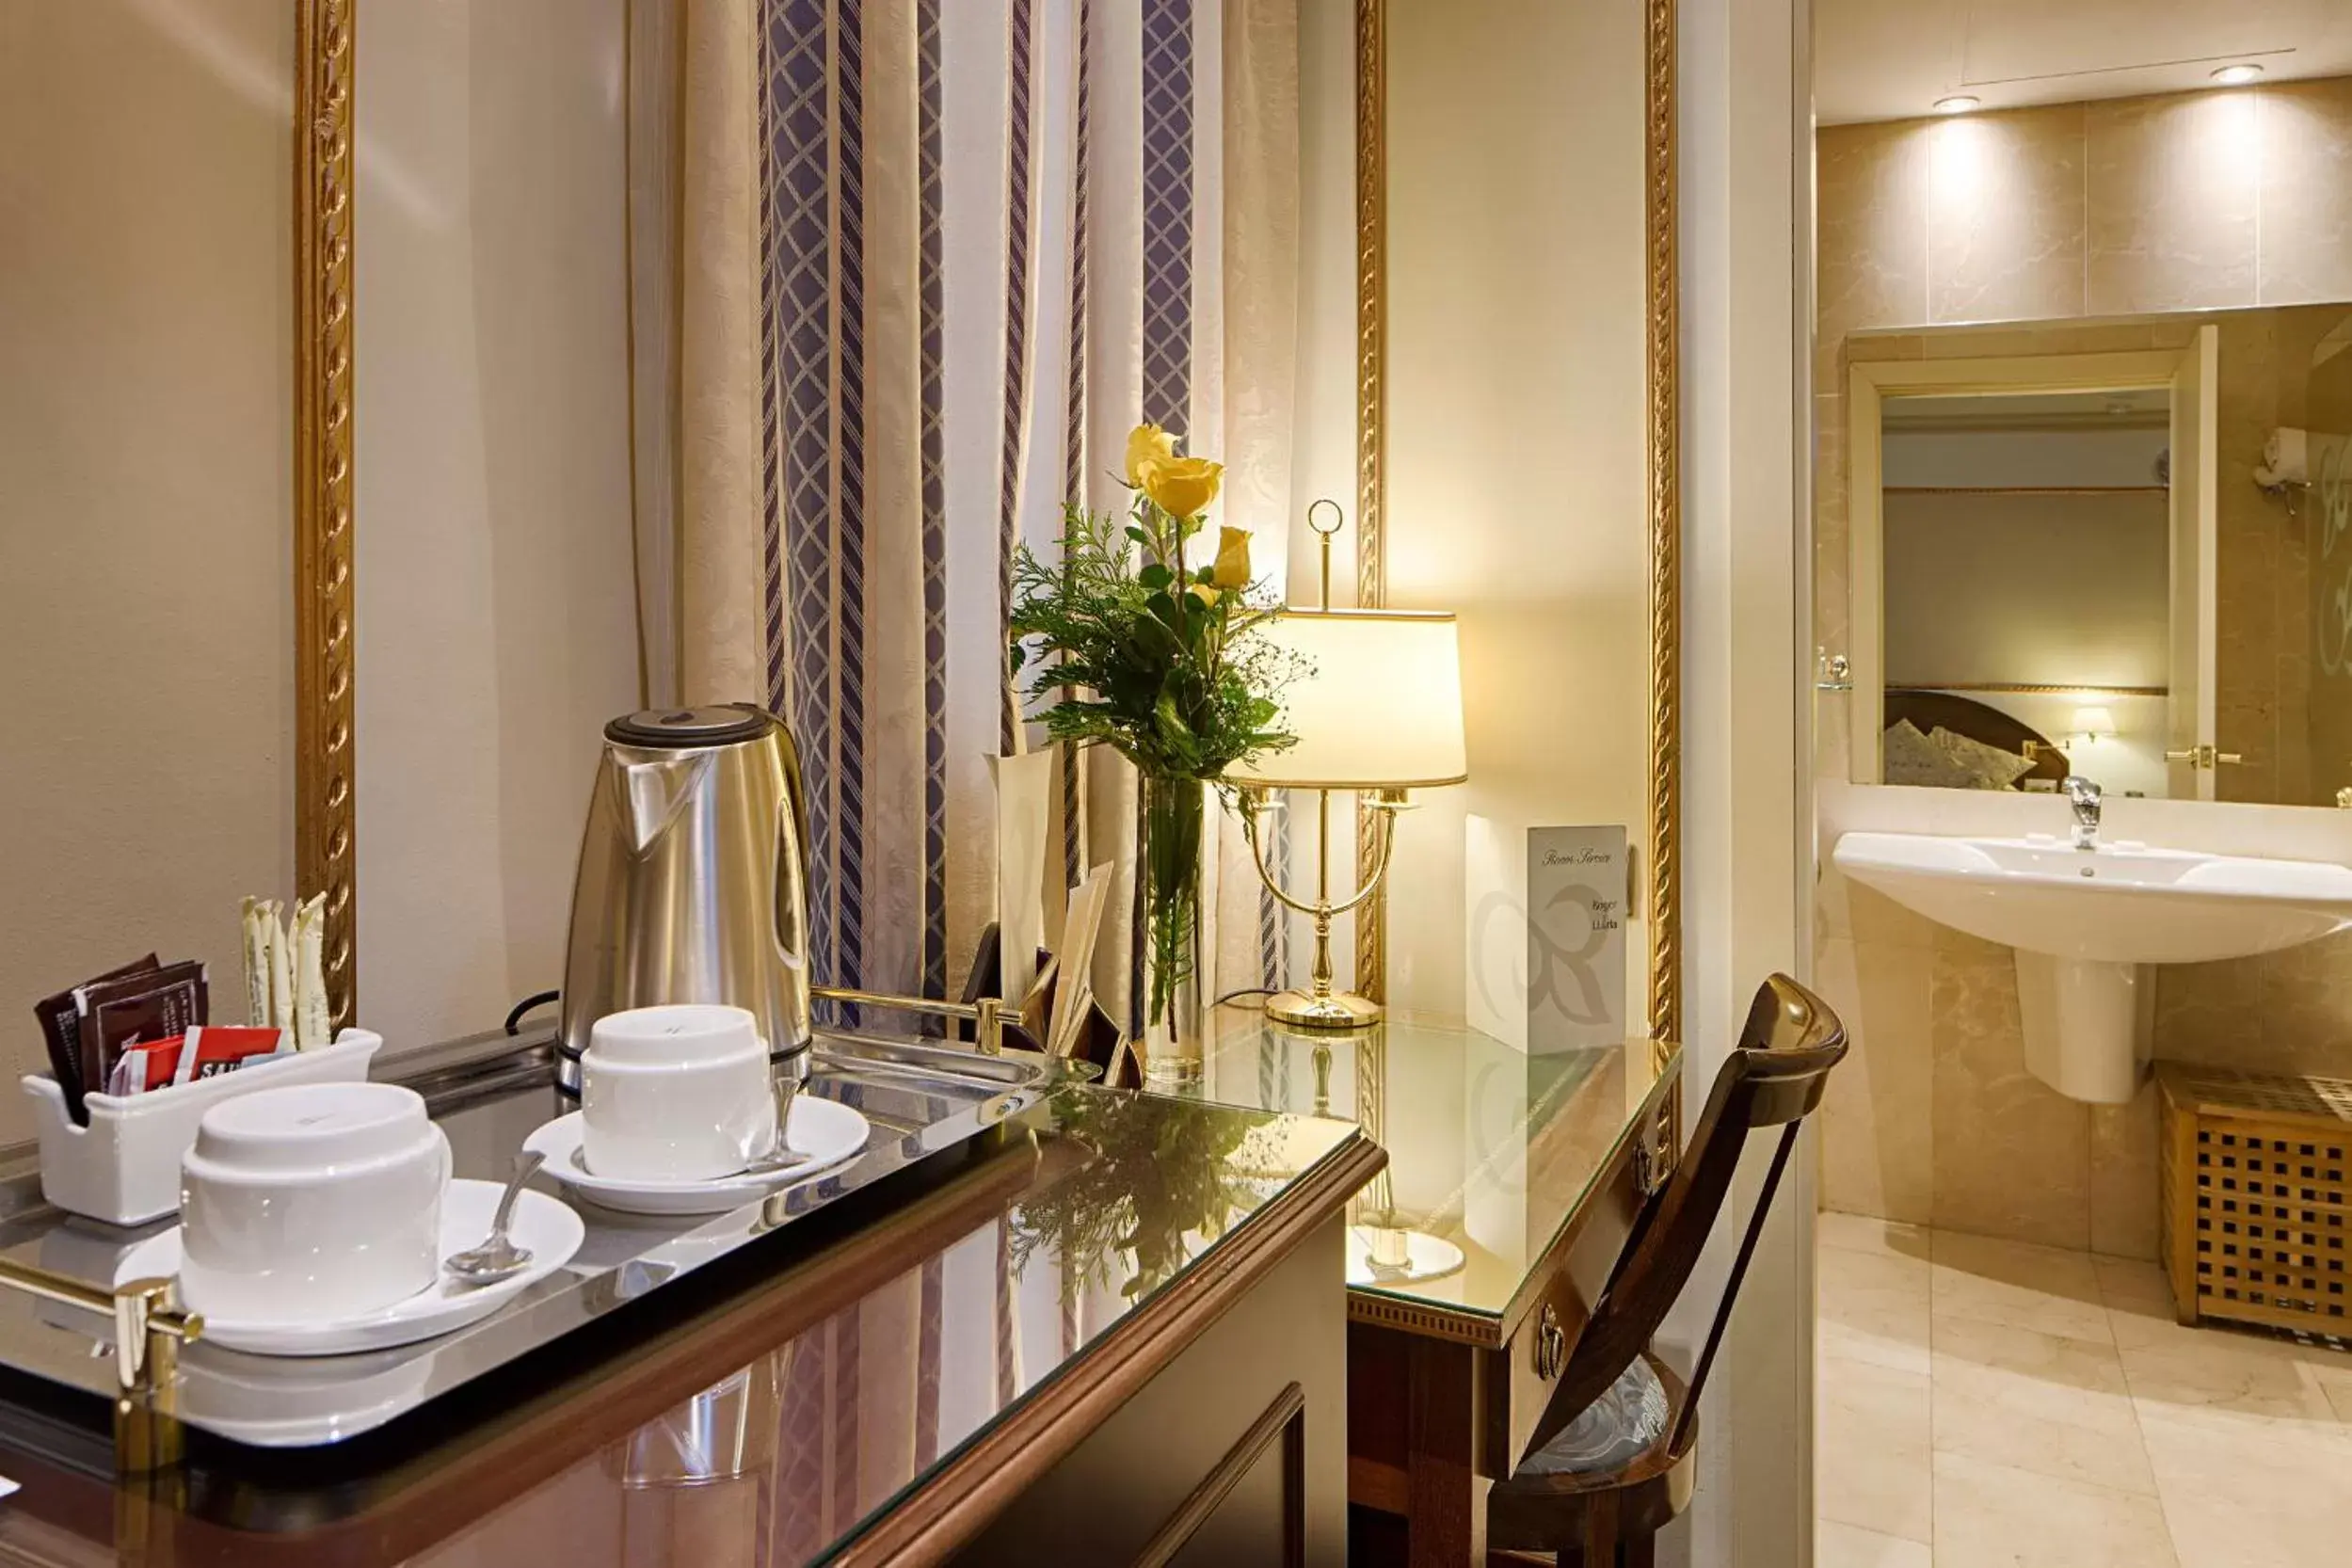 Coffee/tea facilities, Bathroom in Hotel Roger de Llúria